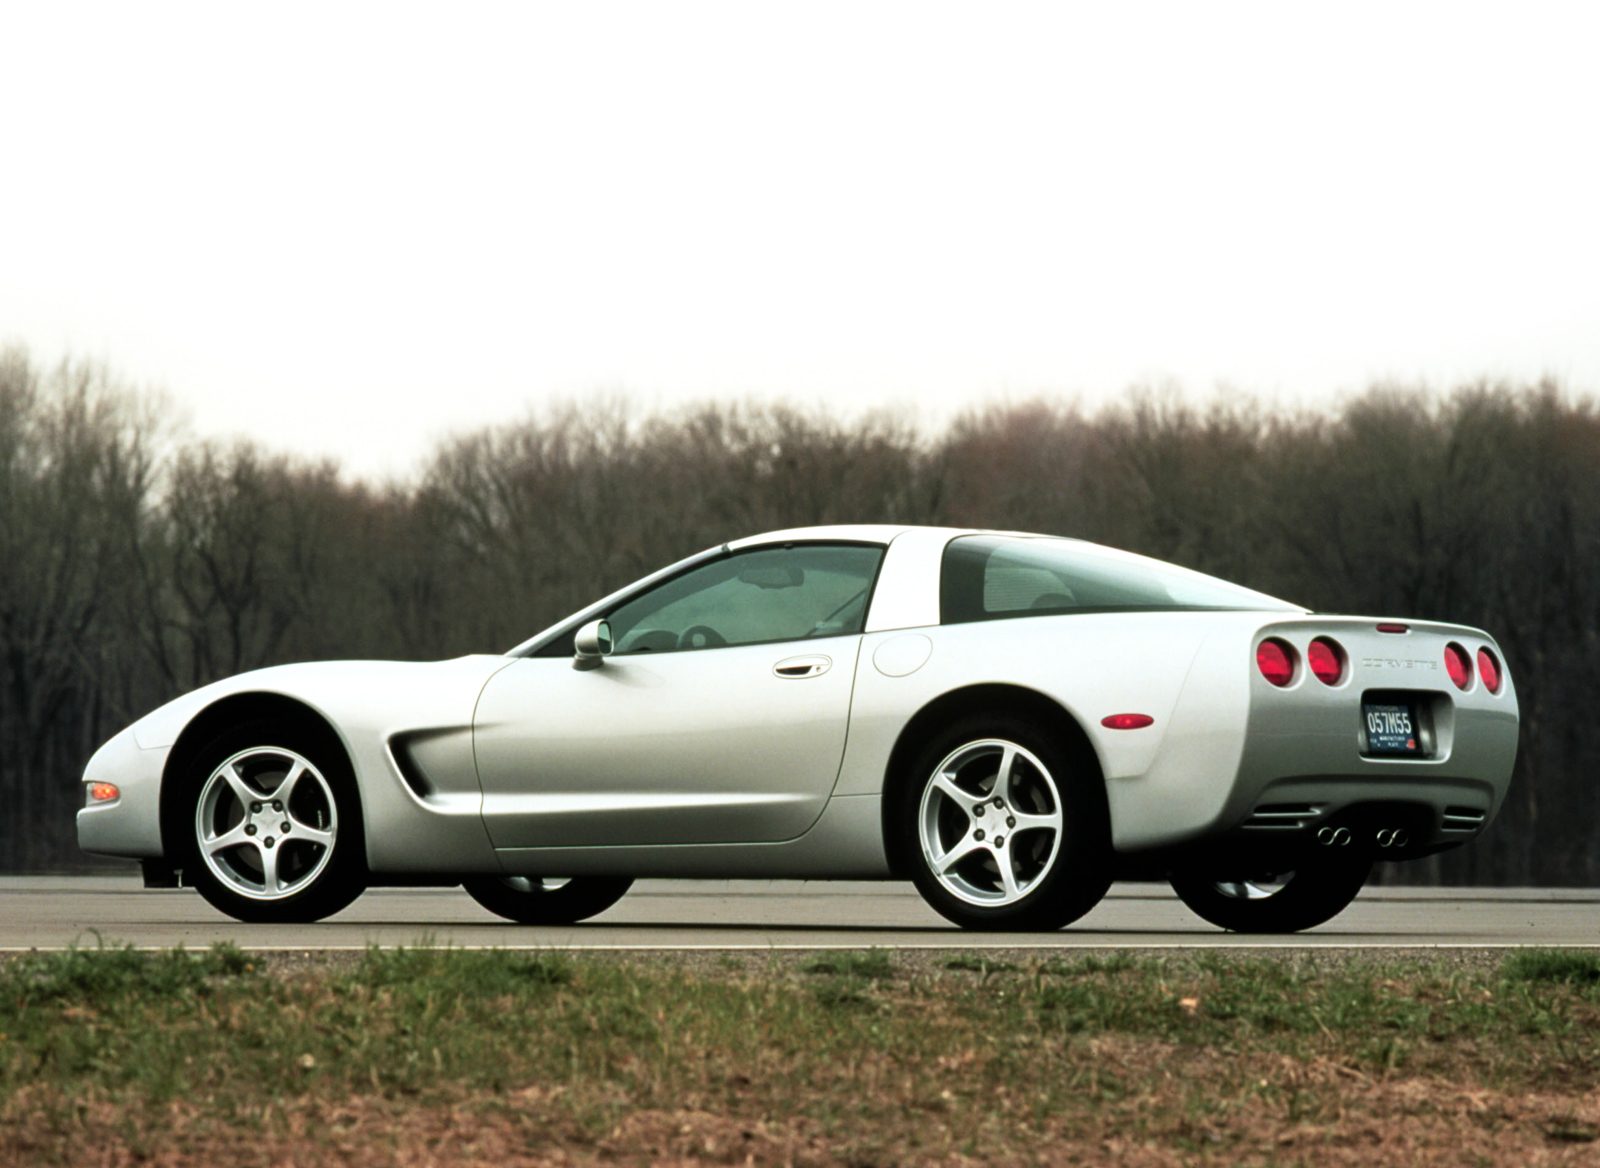 Corvette Of The Day: 2001 Chevrolet Corvette